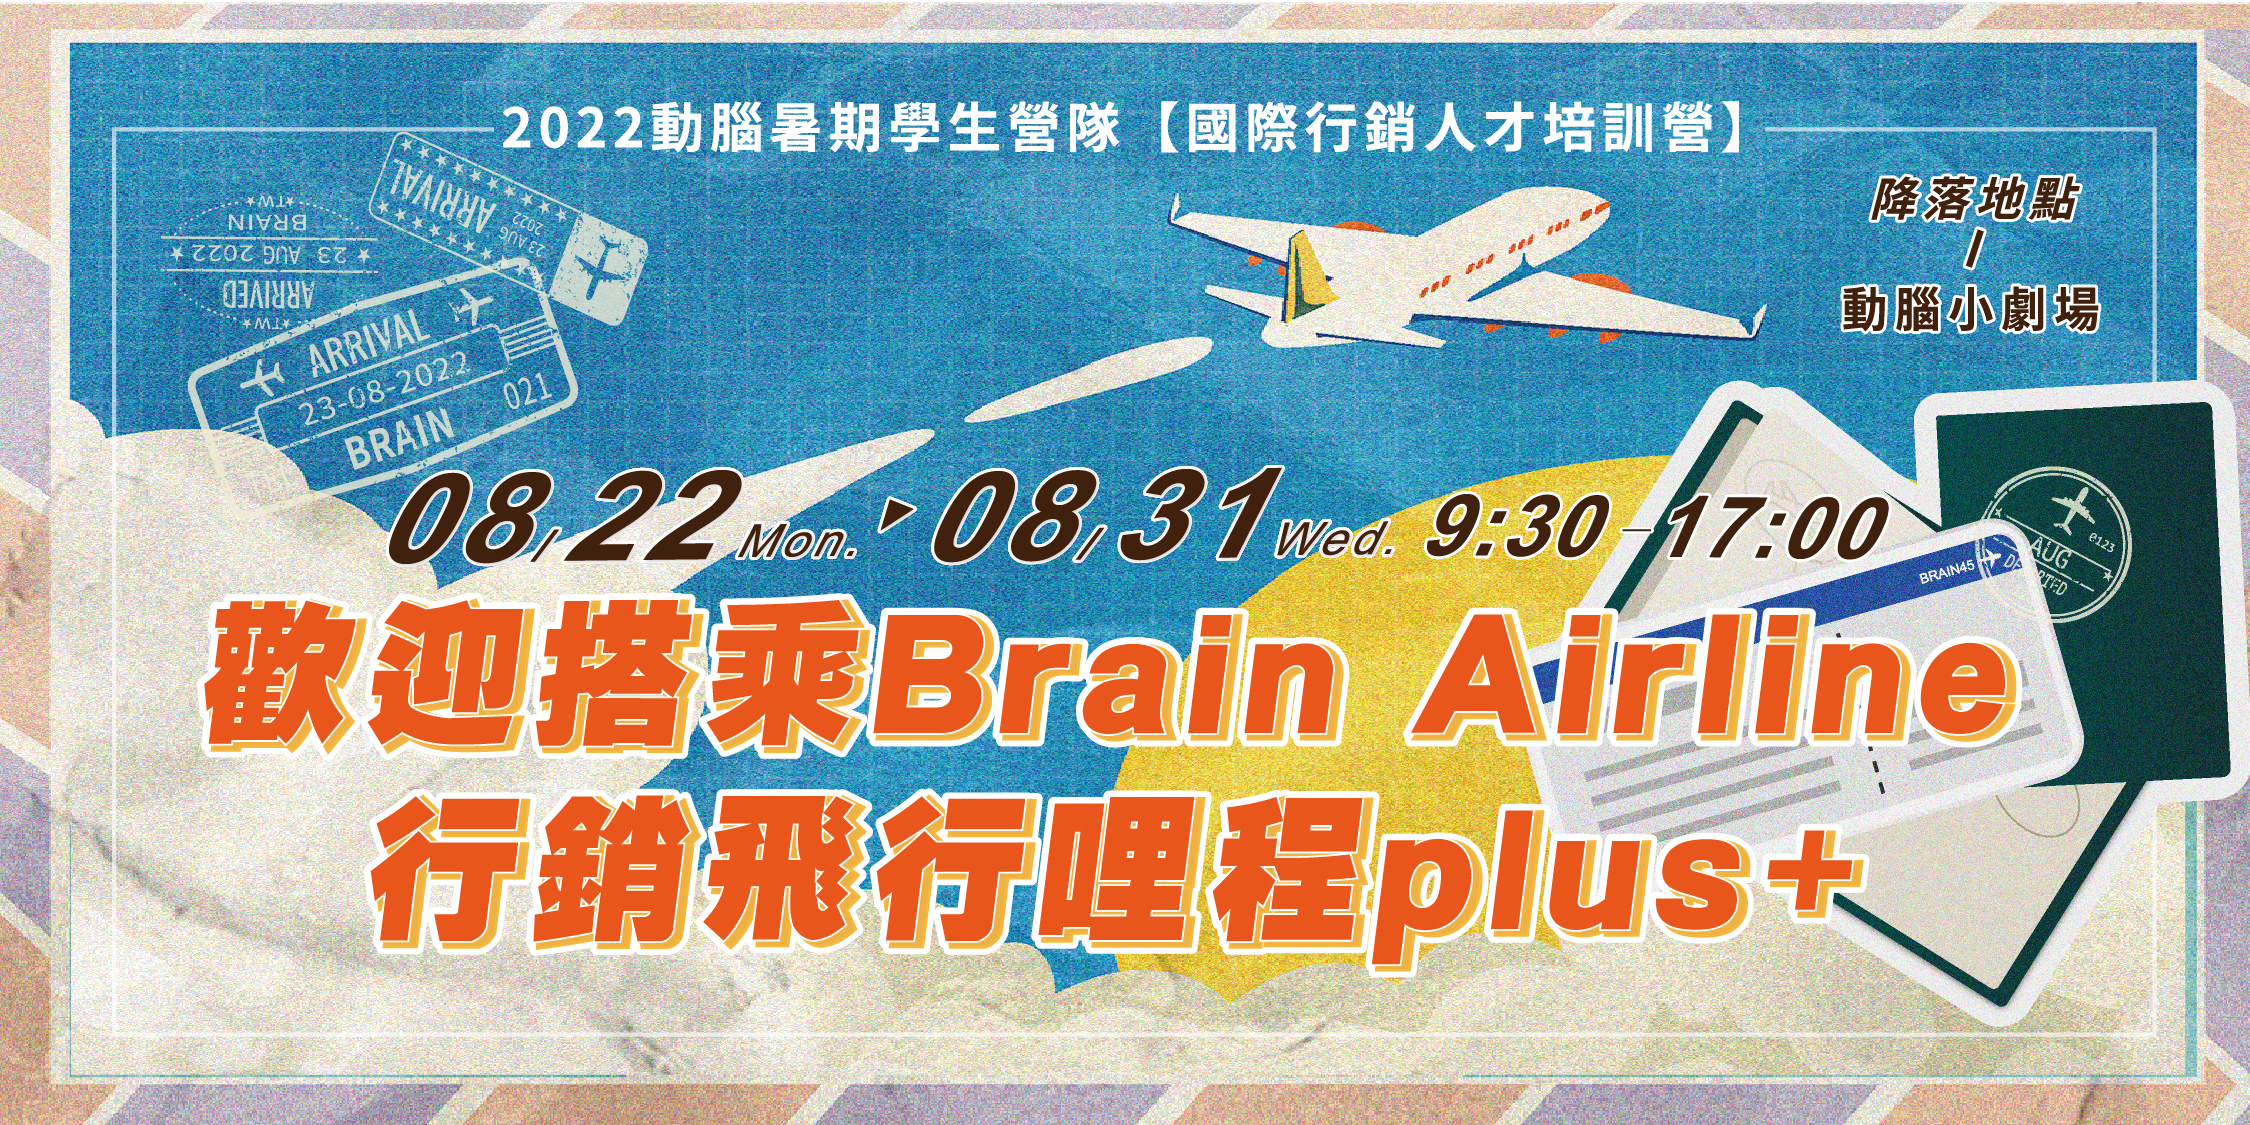 2022暑假學生營隊【歡迎搭乘Brain Airline 行銷飛行哩程plus+】準備開課拉！